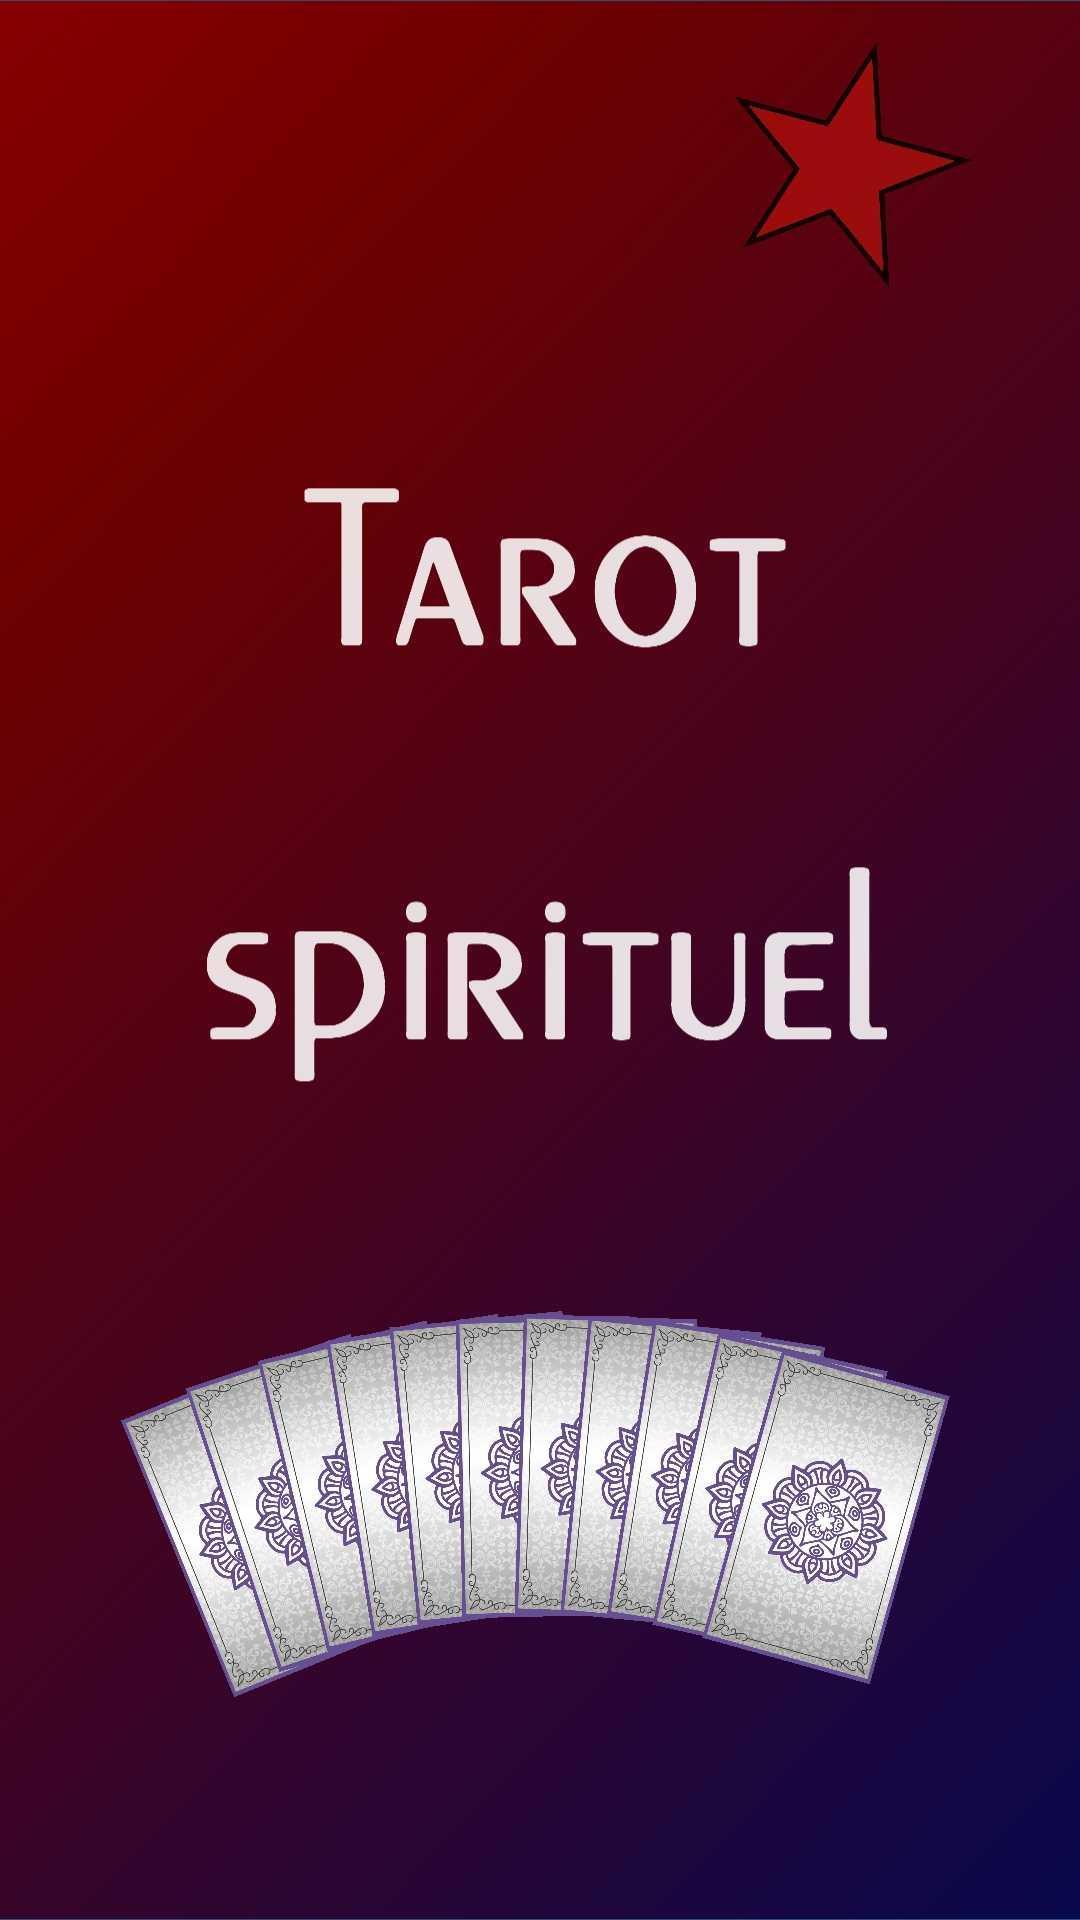 Tarot spirituel pour Android - Téléchargez l'APK